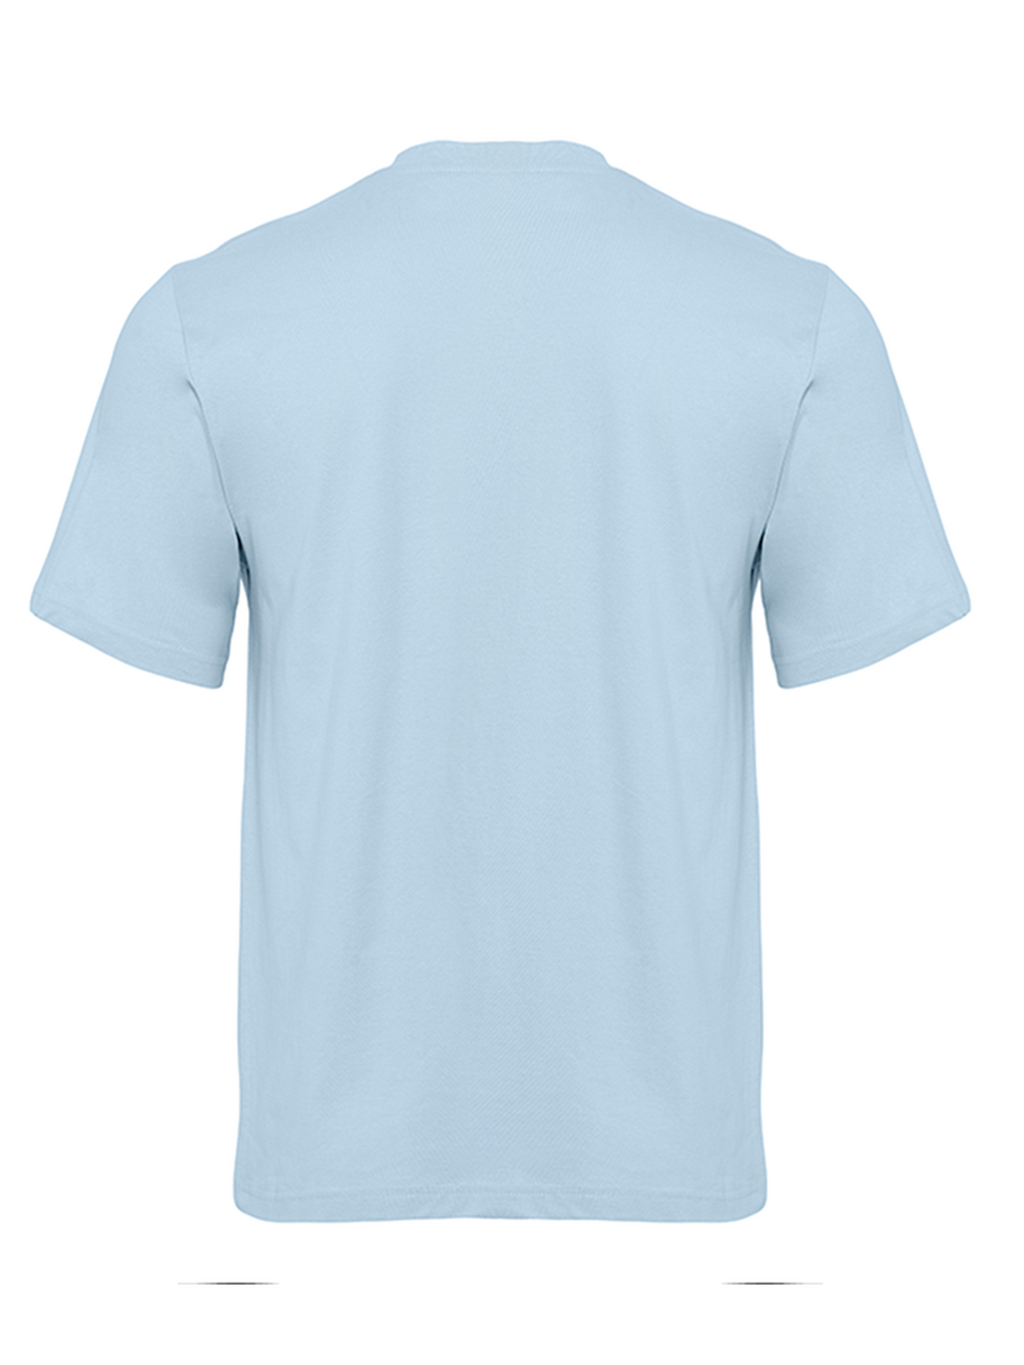 有机基本T恤 - 浅蓝色